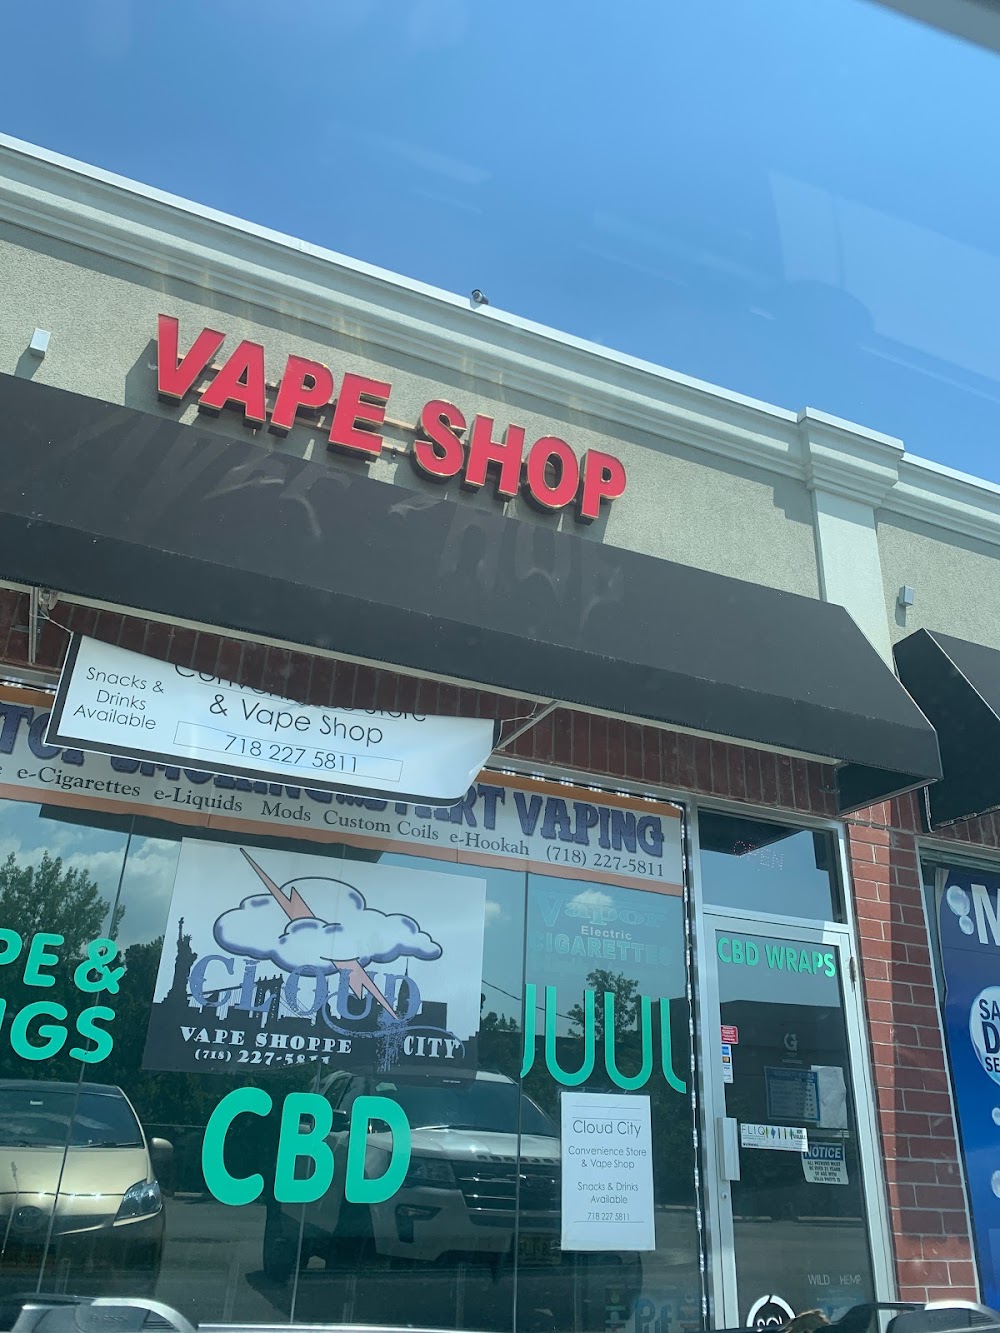 Cloud City Vape Shop